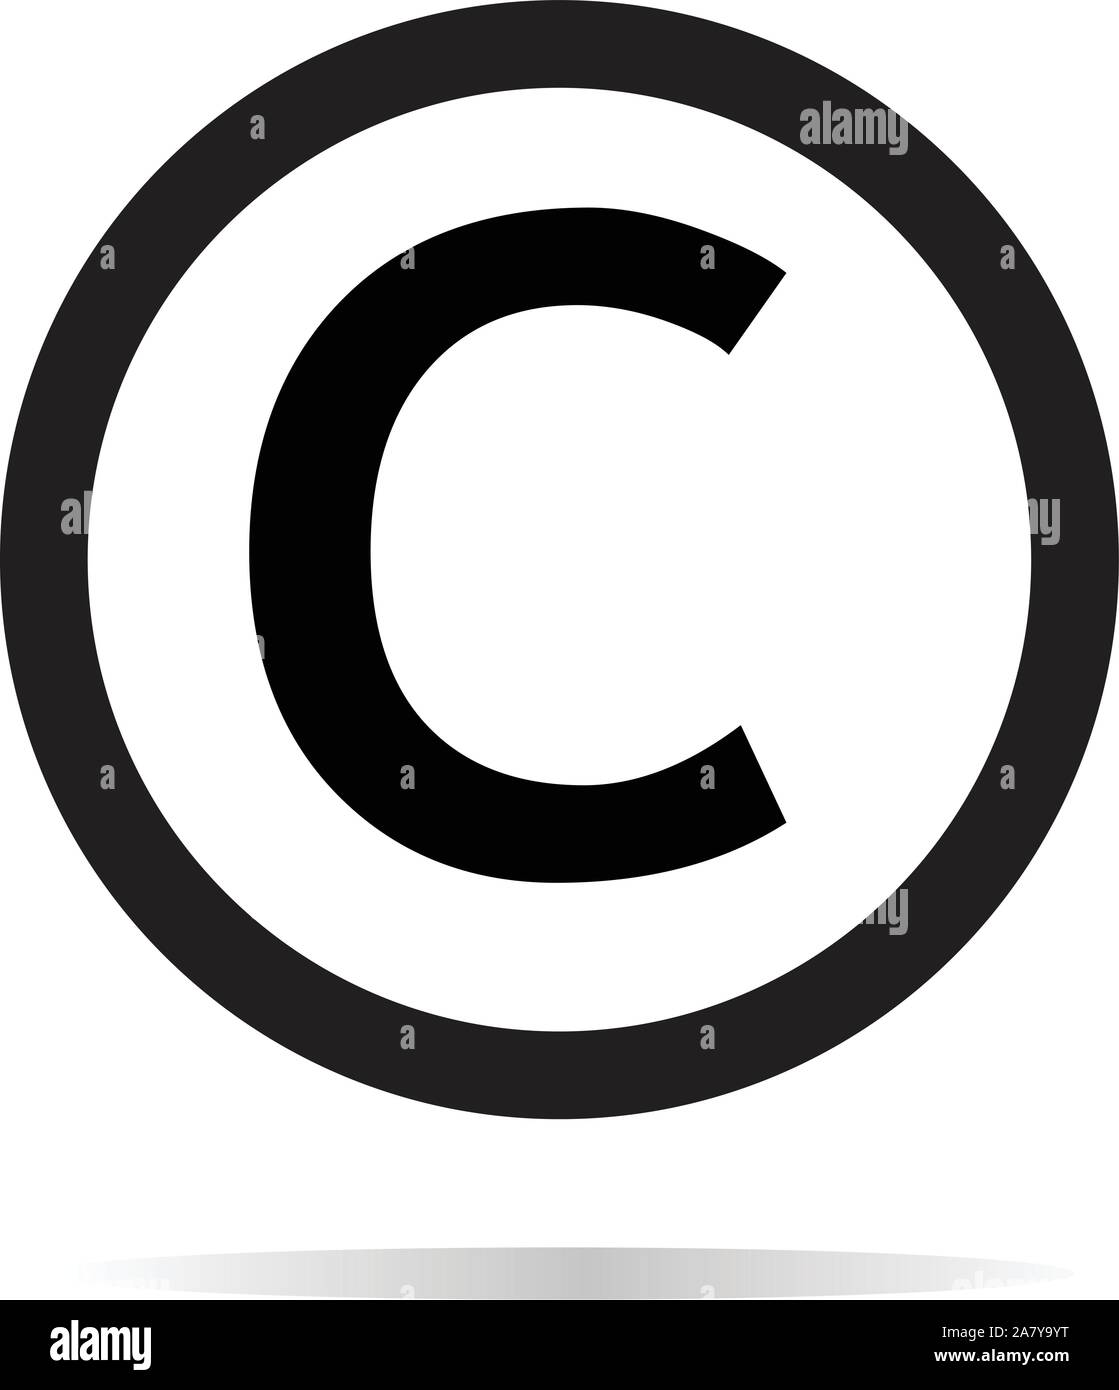 Icono de copyright sobre fondo blanco. signo de copyright. Estilo plano. copyright icono del diseño de su sitio web, logo, app, IU. Ilustración del Vector